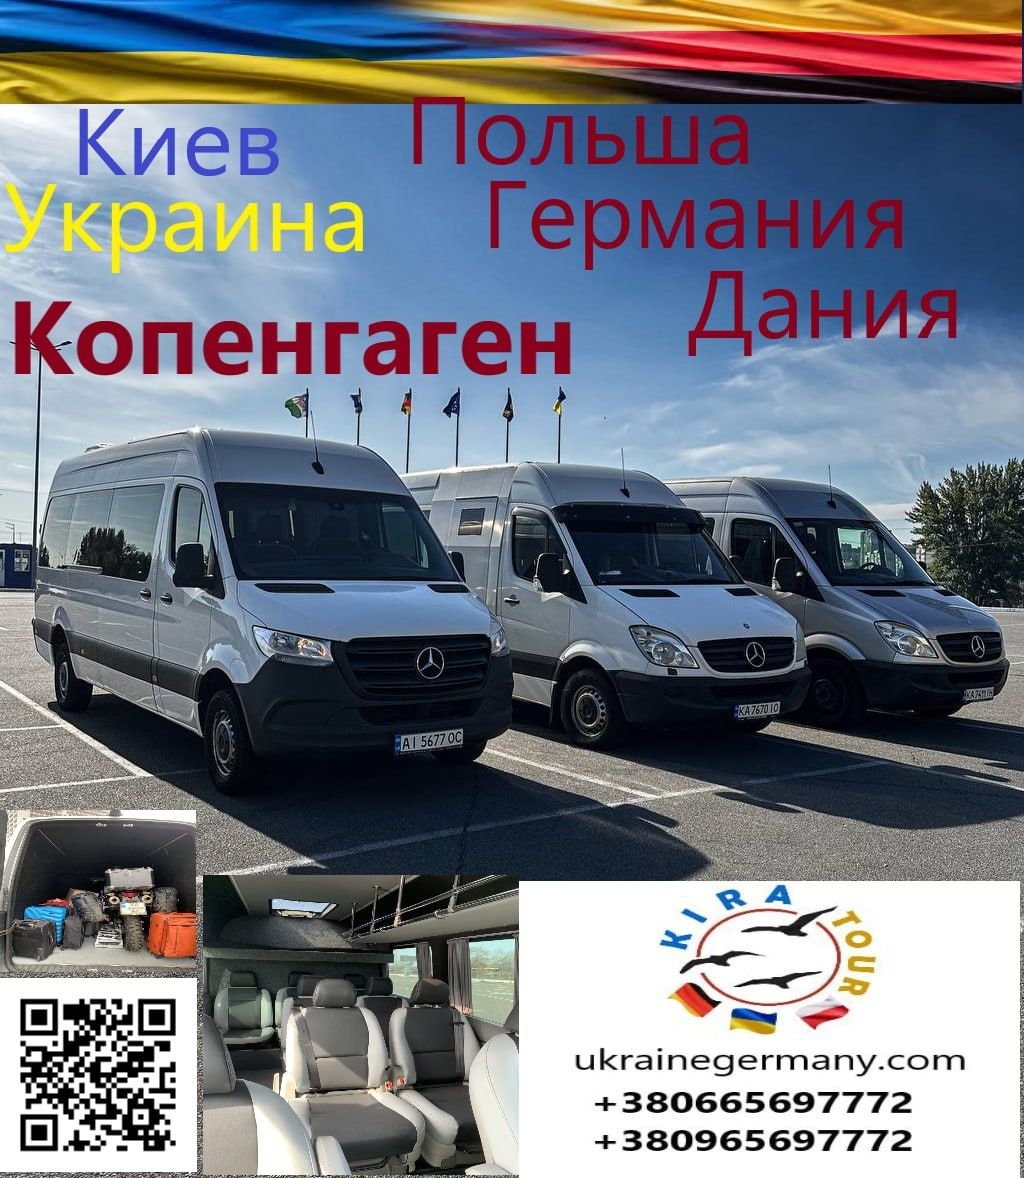 Киев Украина - Дания Компенгаген. Пассажирские перевозки и посылки.